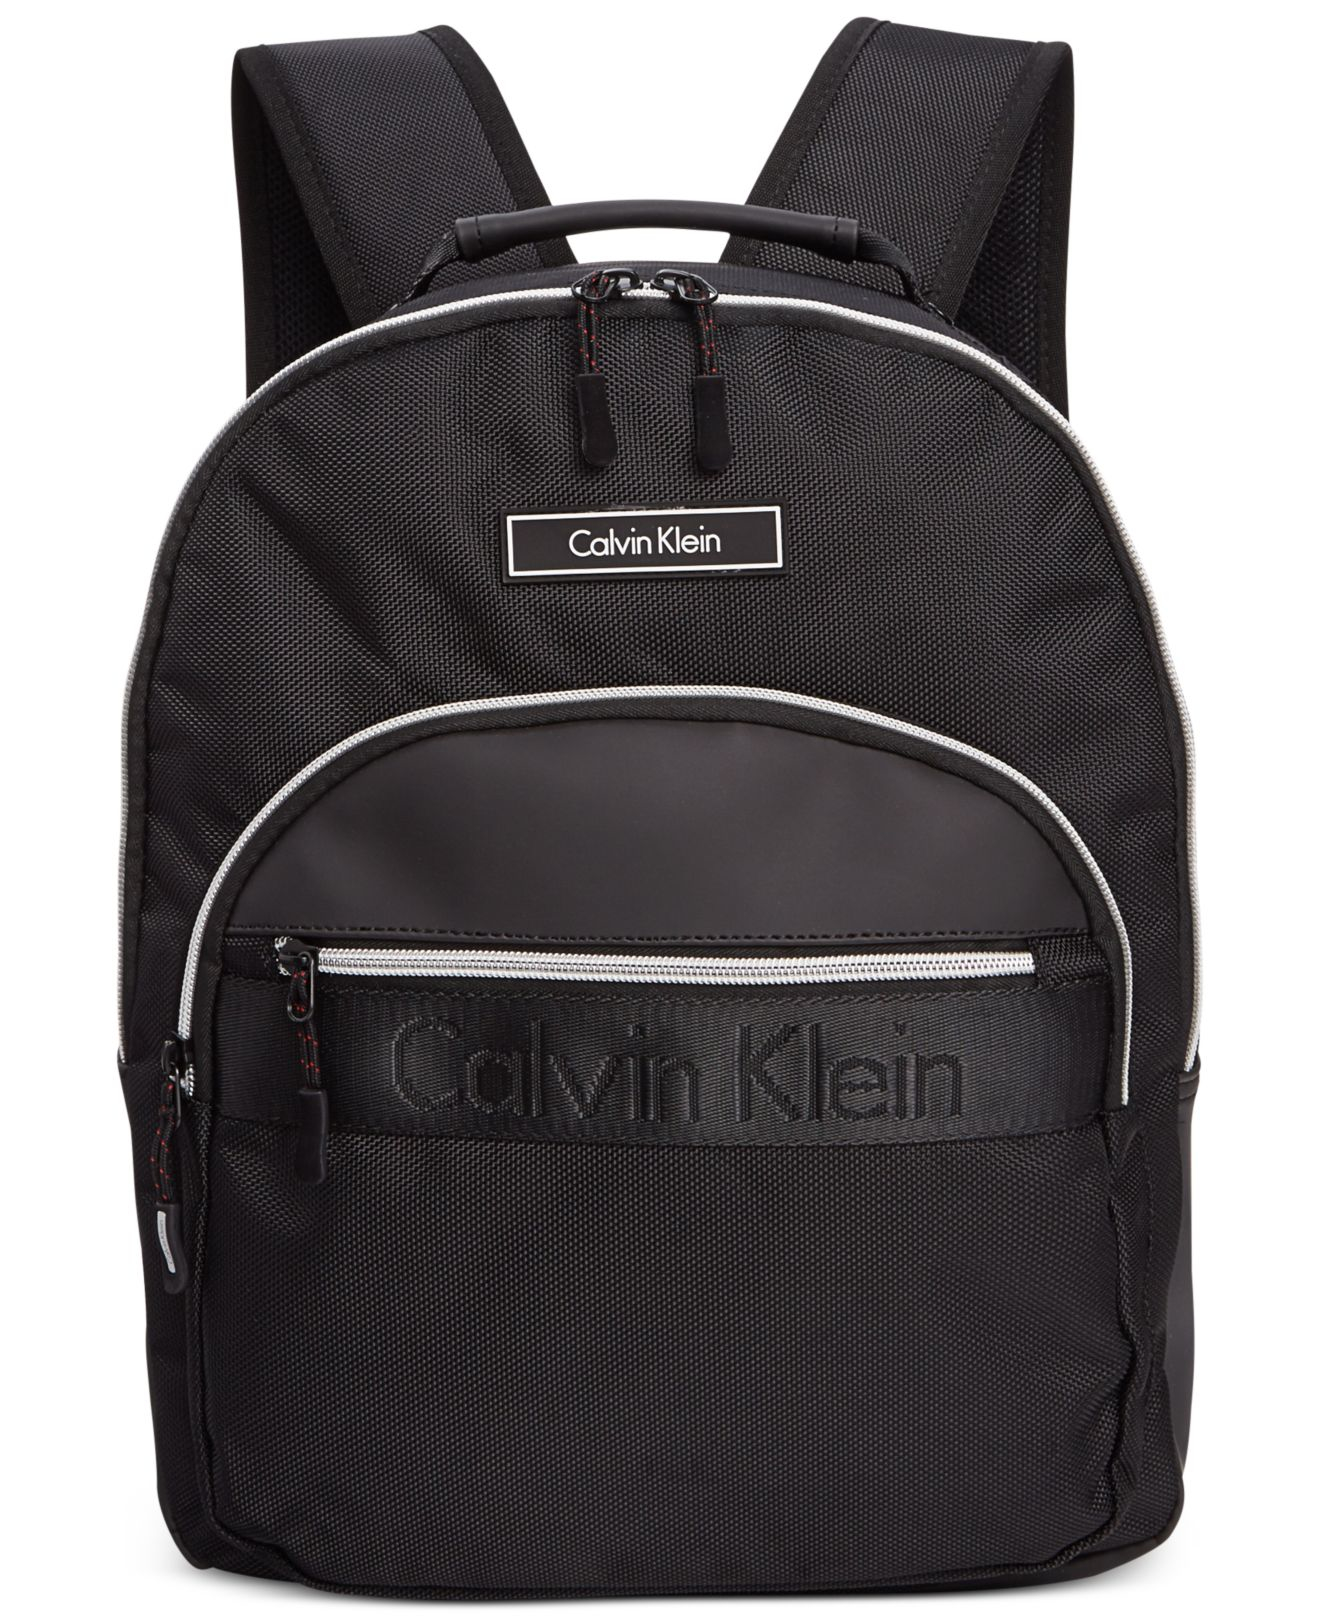 Calvin klein Nylon Backpack in Black | Lyst